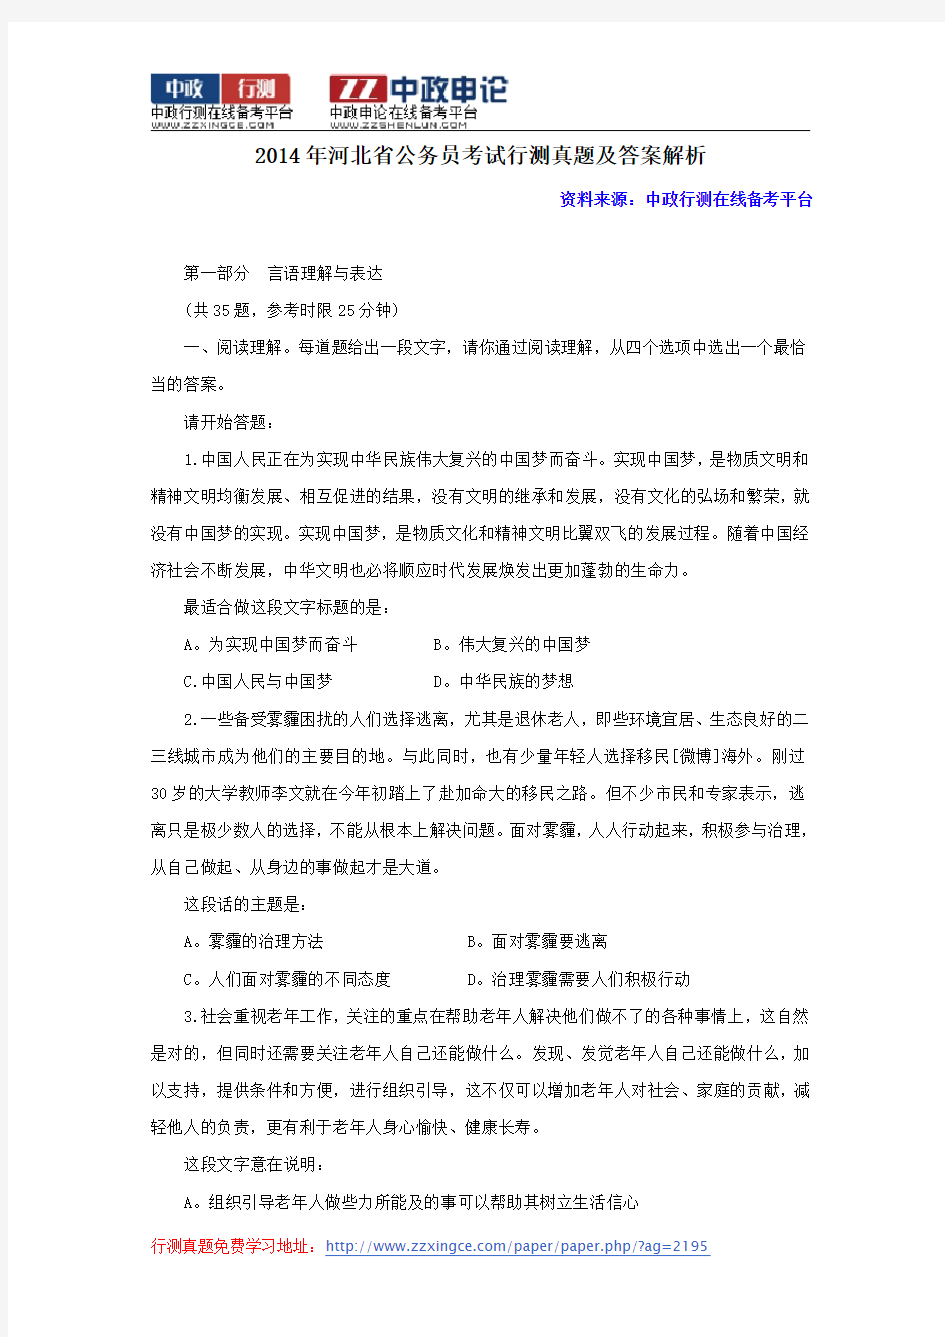 2014年河北省公务员考试行测真题及答案解析